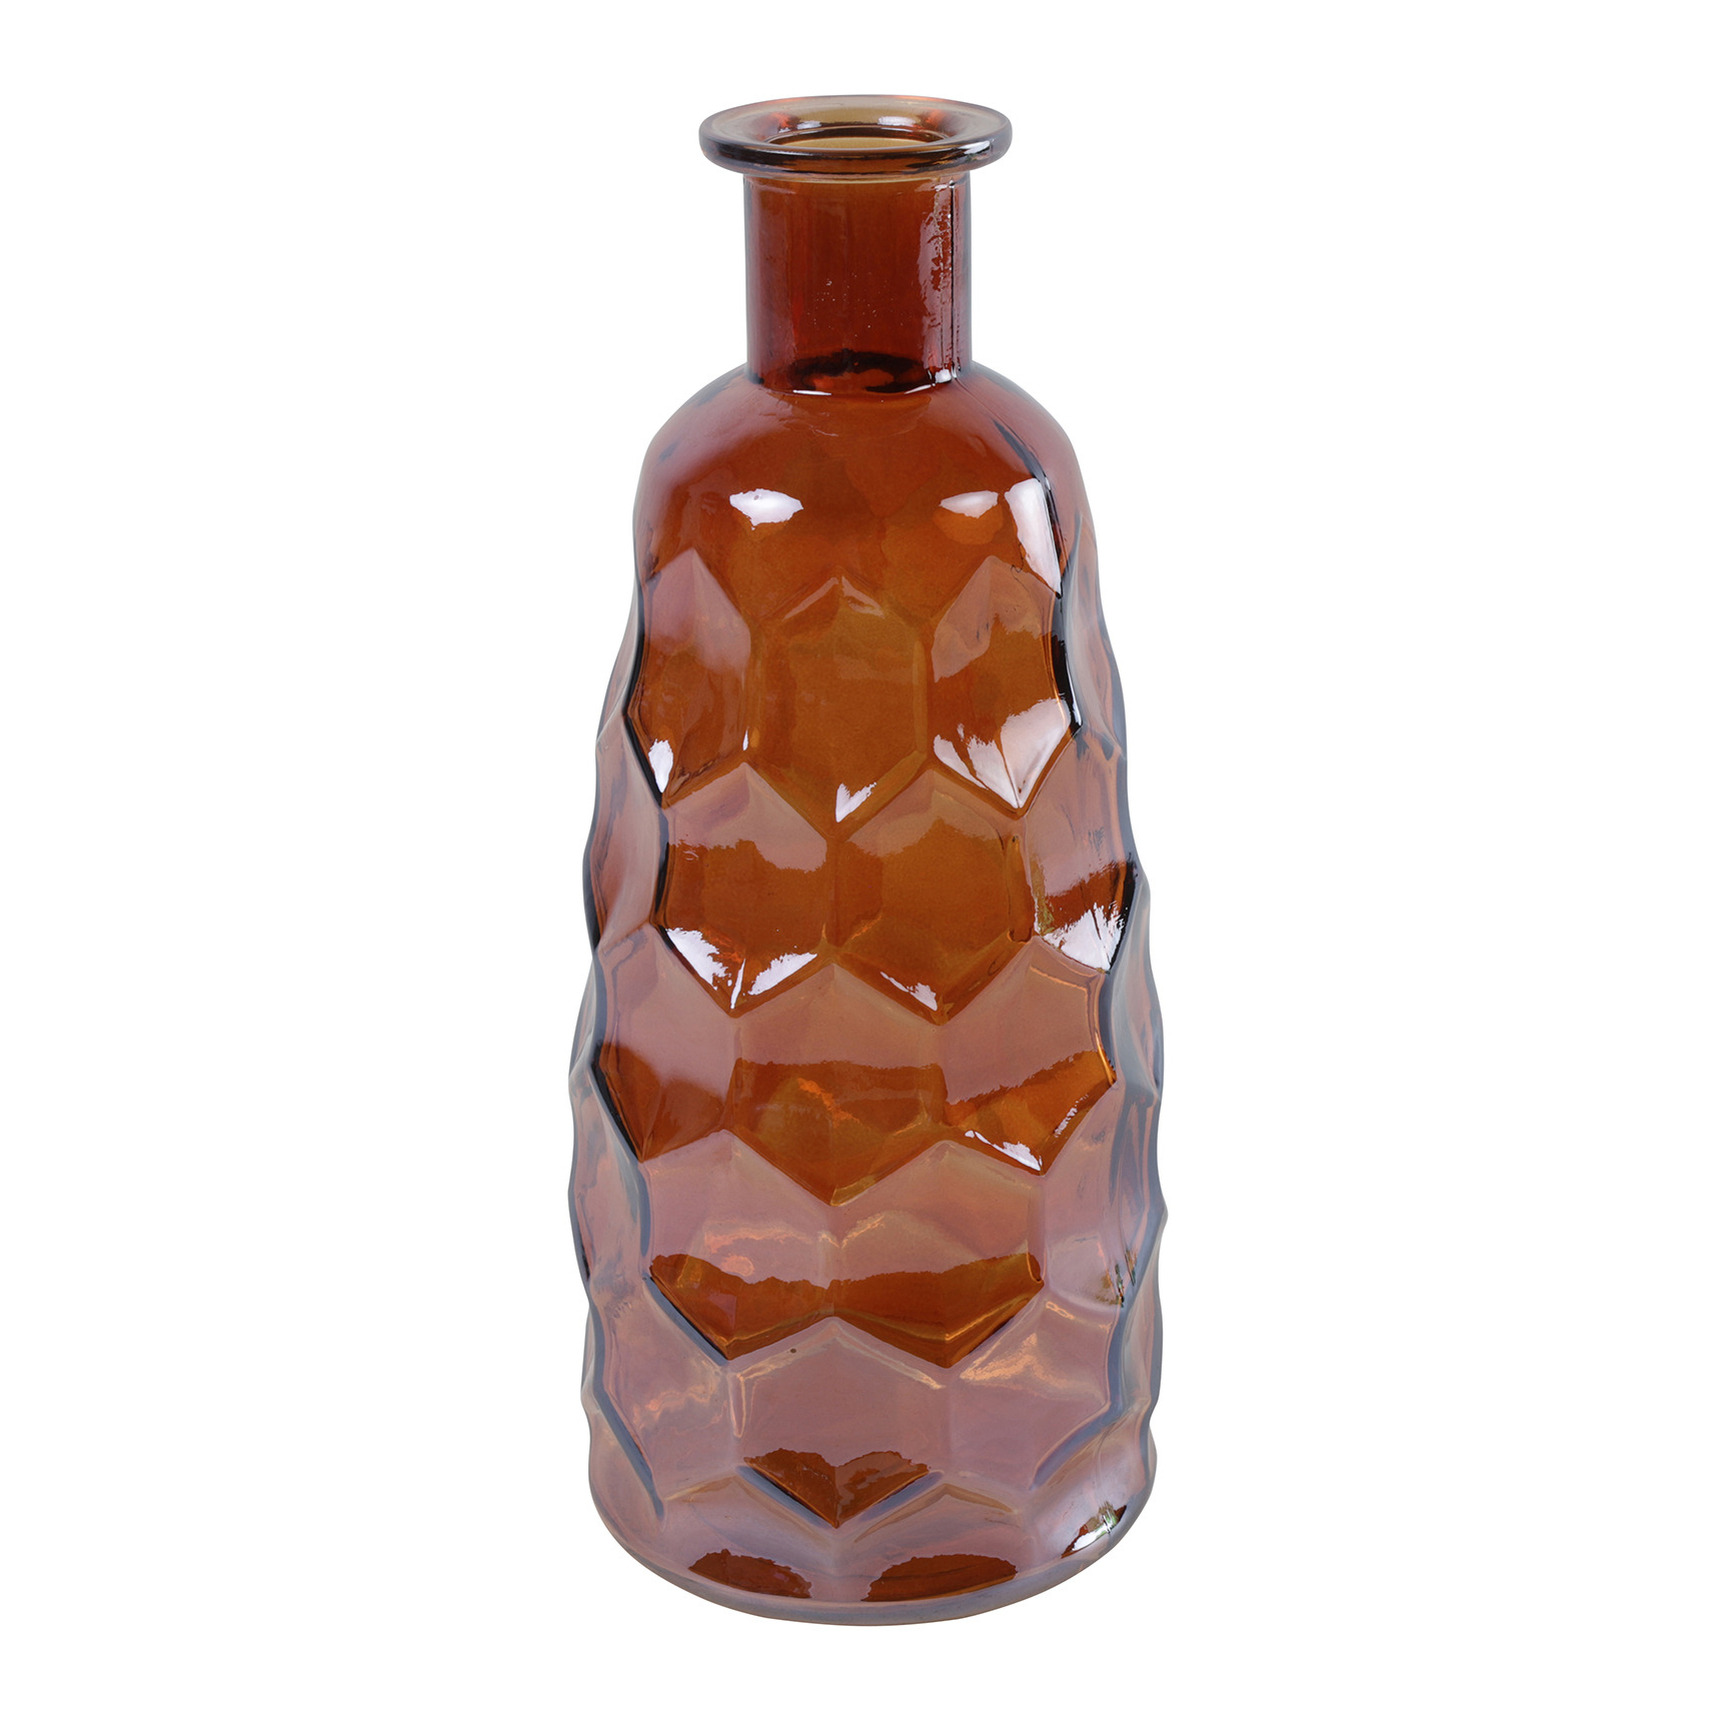 Countryfield Art Deco bloemenvaas - cognac bruin transparant - glas - fles vorm - D12 x H30 cm -